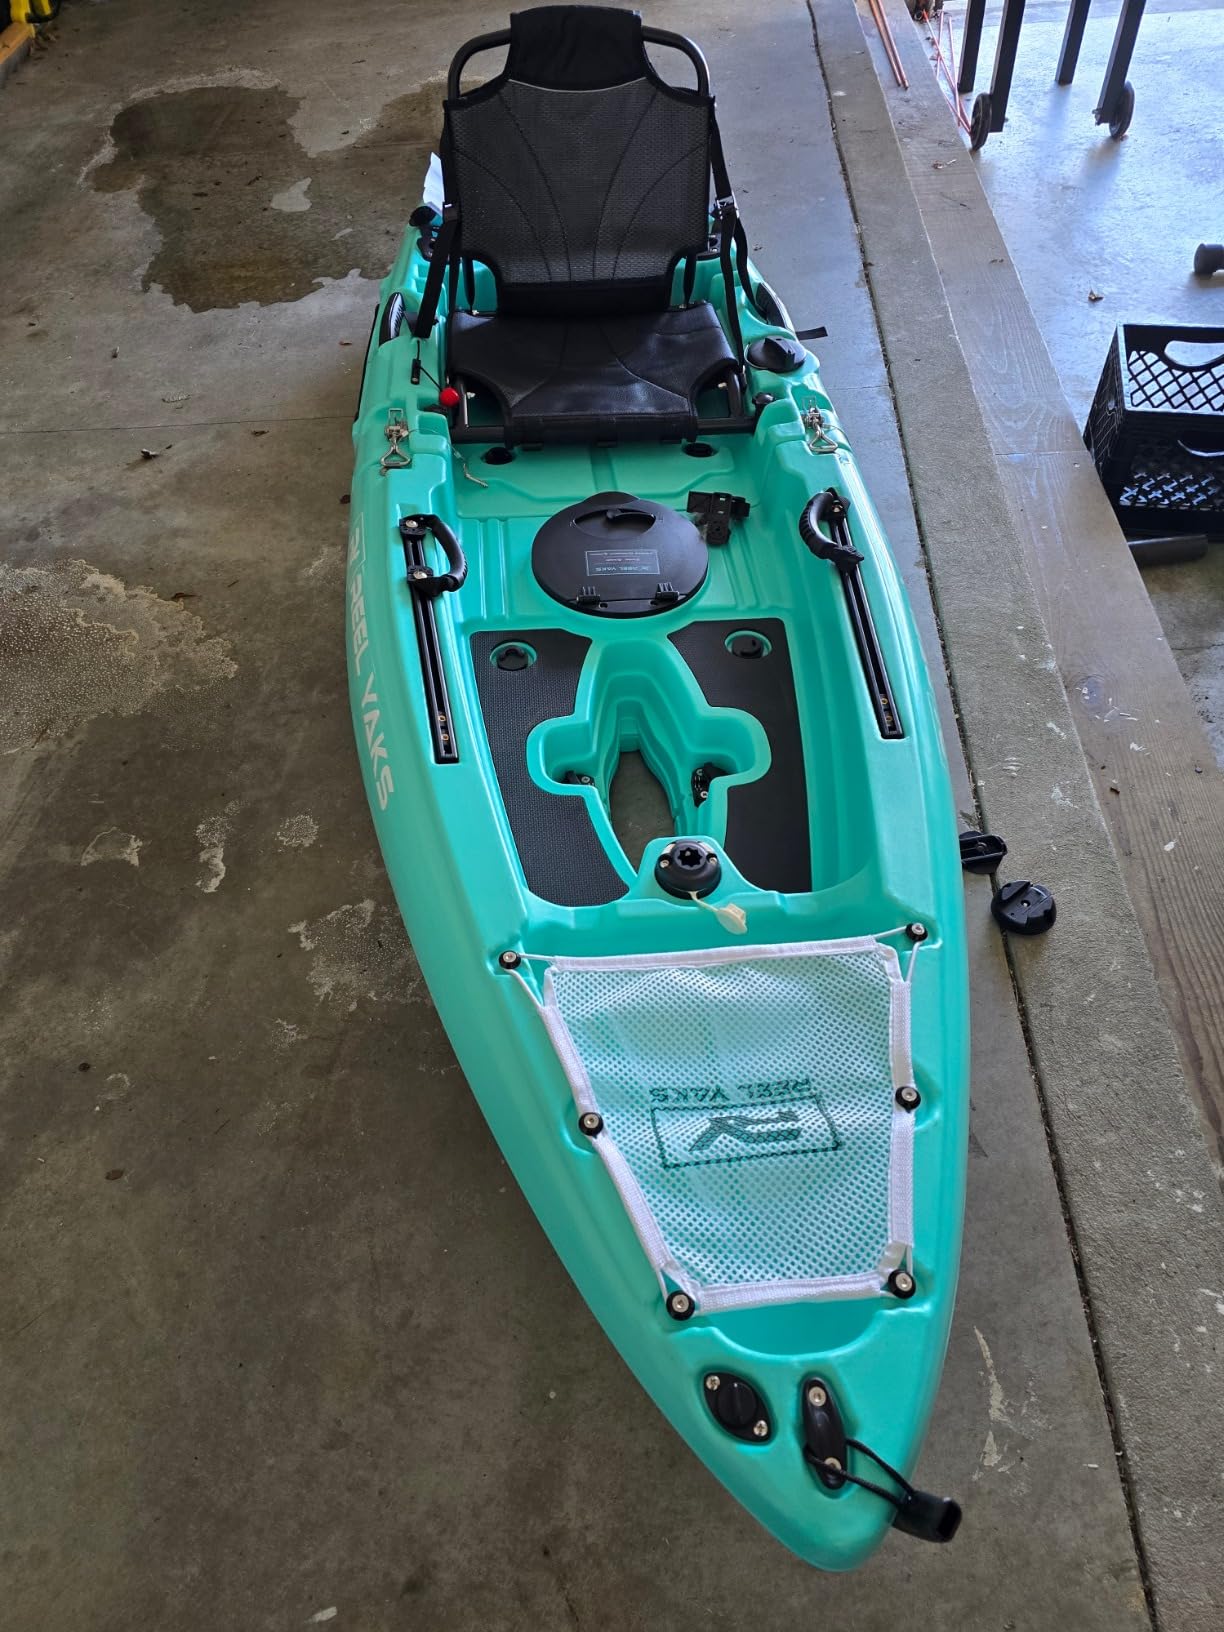 9.5ft Raptor Modular Fin Drive Pedal Fishing Kayak